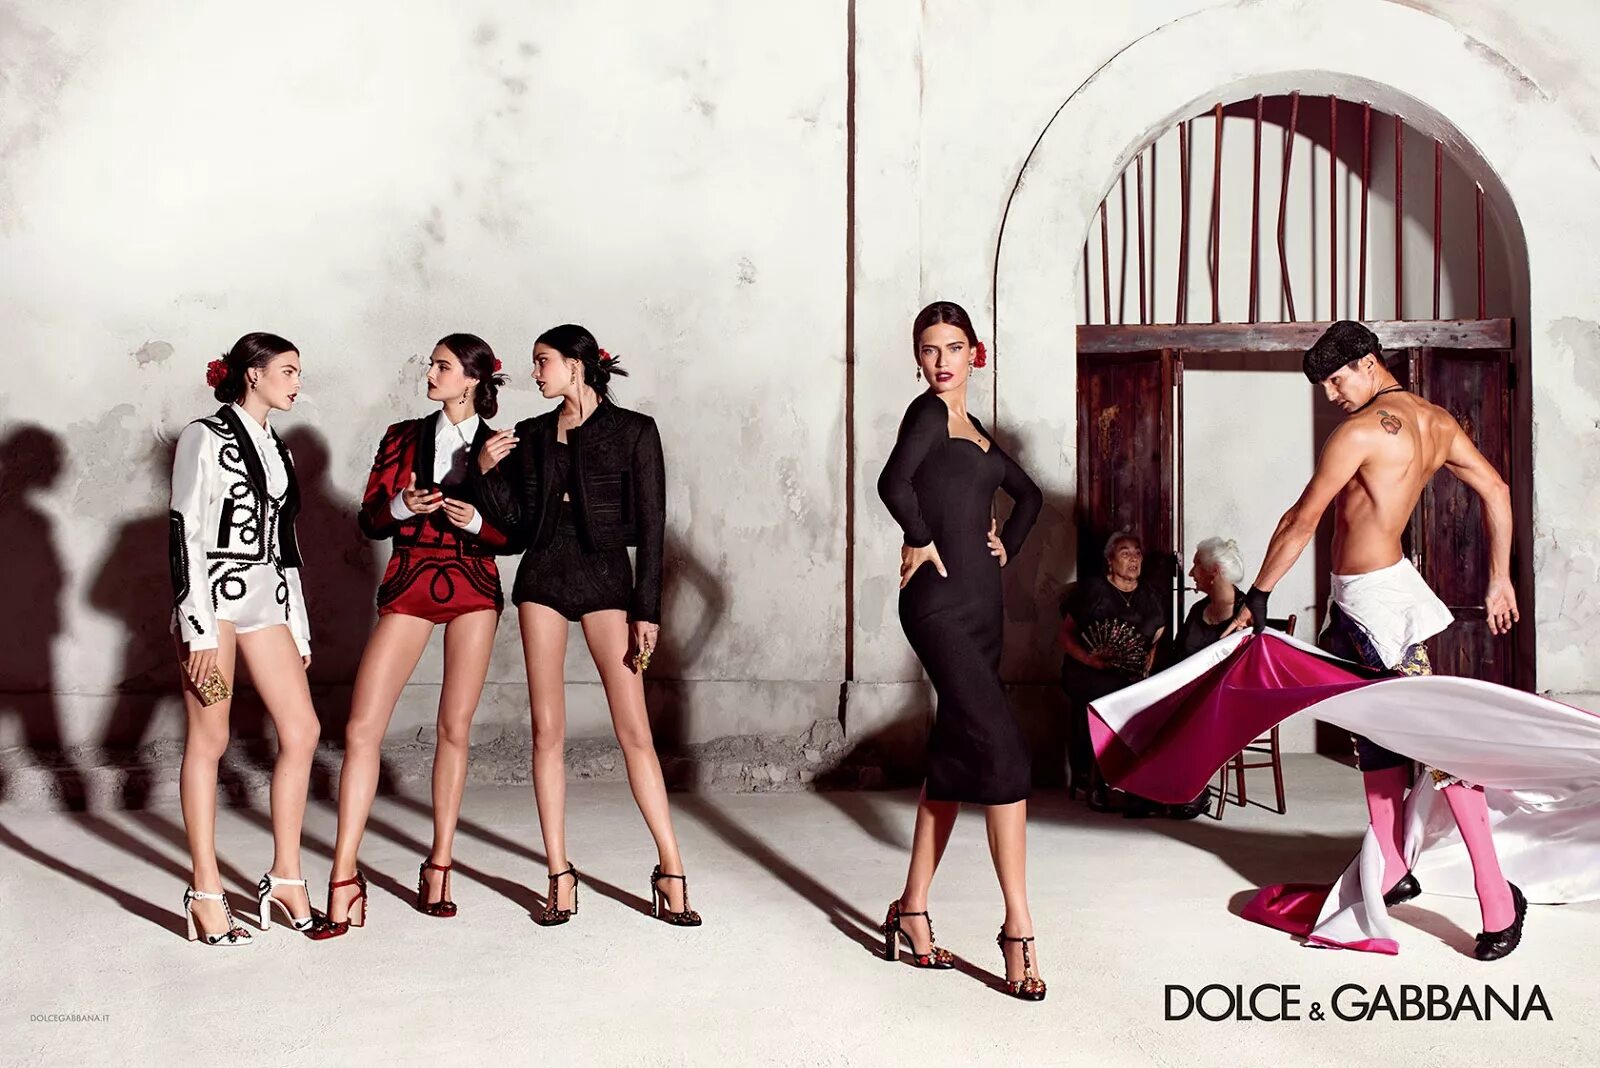 Dolce Gabbana 2021 Бьянка Балти. Бьянка Балти Дольче Габбана семья. Рекламный кампейн Дольче Габбана. Дольче Габбана рекламная компания.